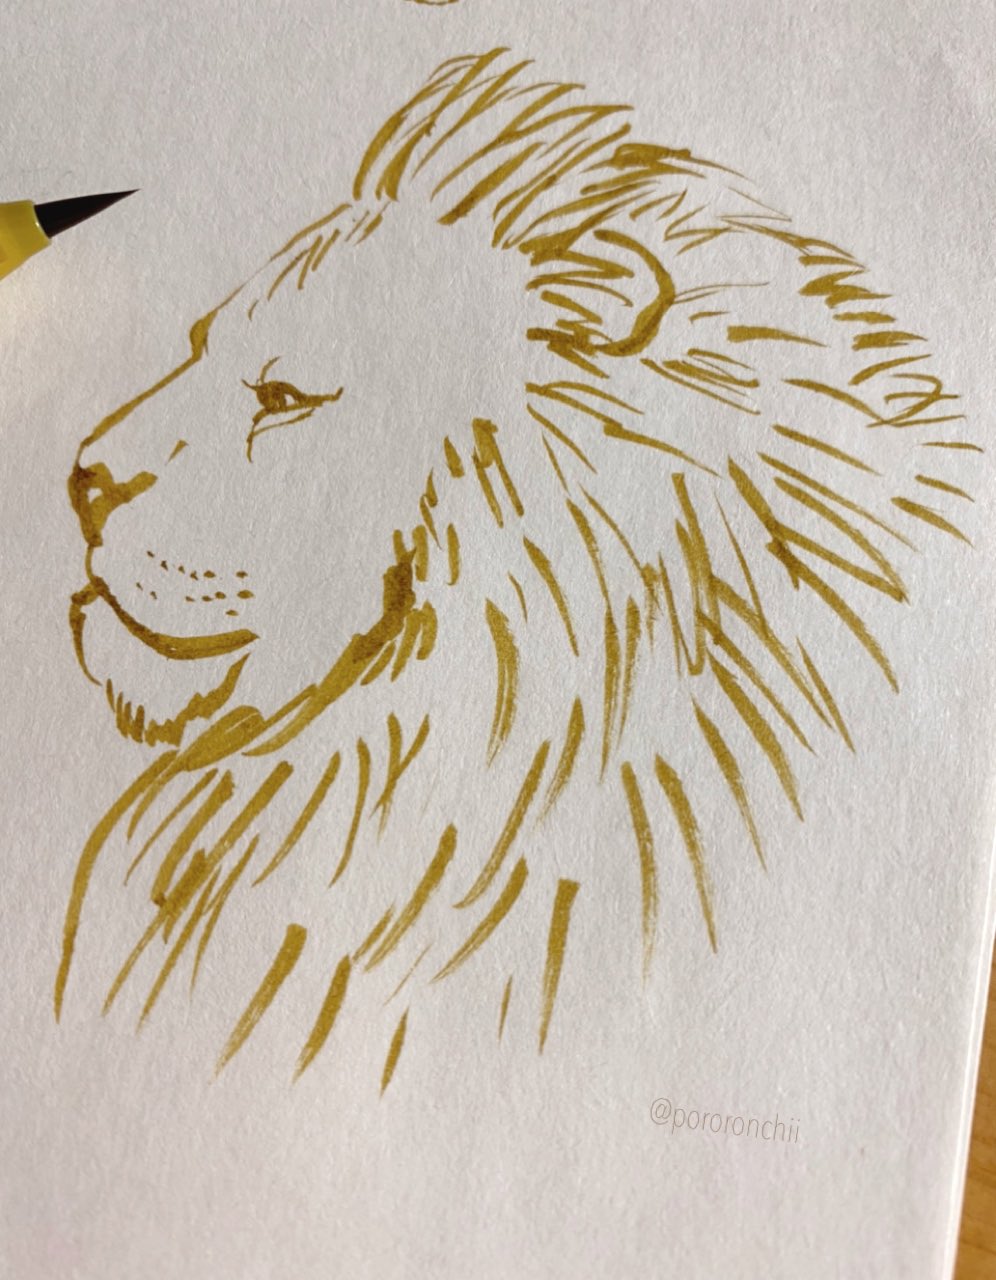 Twitter 上的 たかはし ちひろ ライオンの横顔描いてみた ライオン らくがき イラスト Illustration Lion Animal T Co Y3vhgmpc8b Twitter